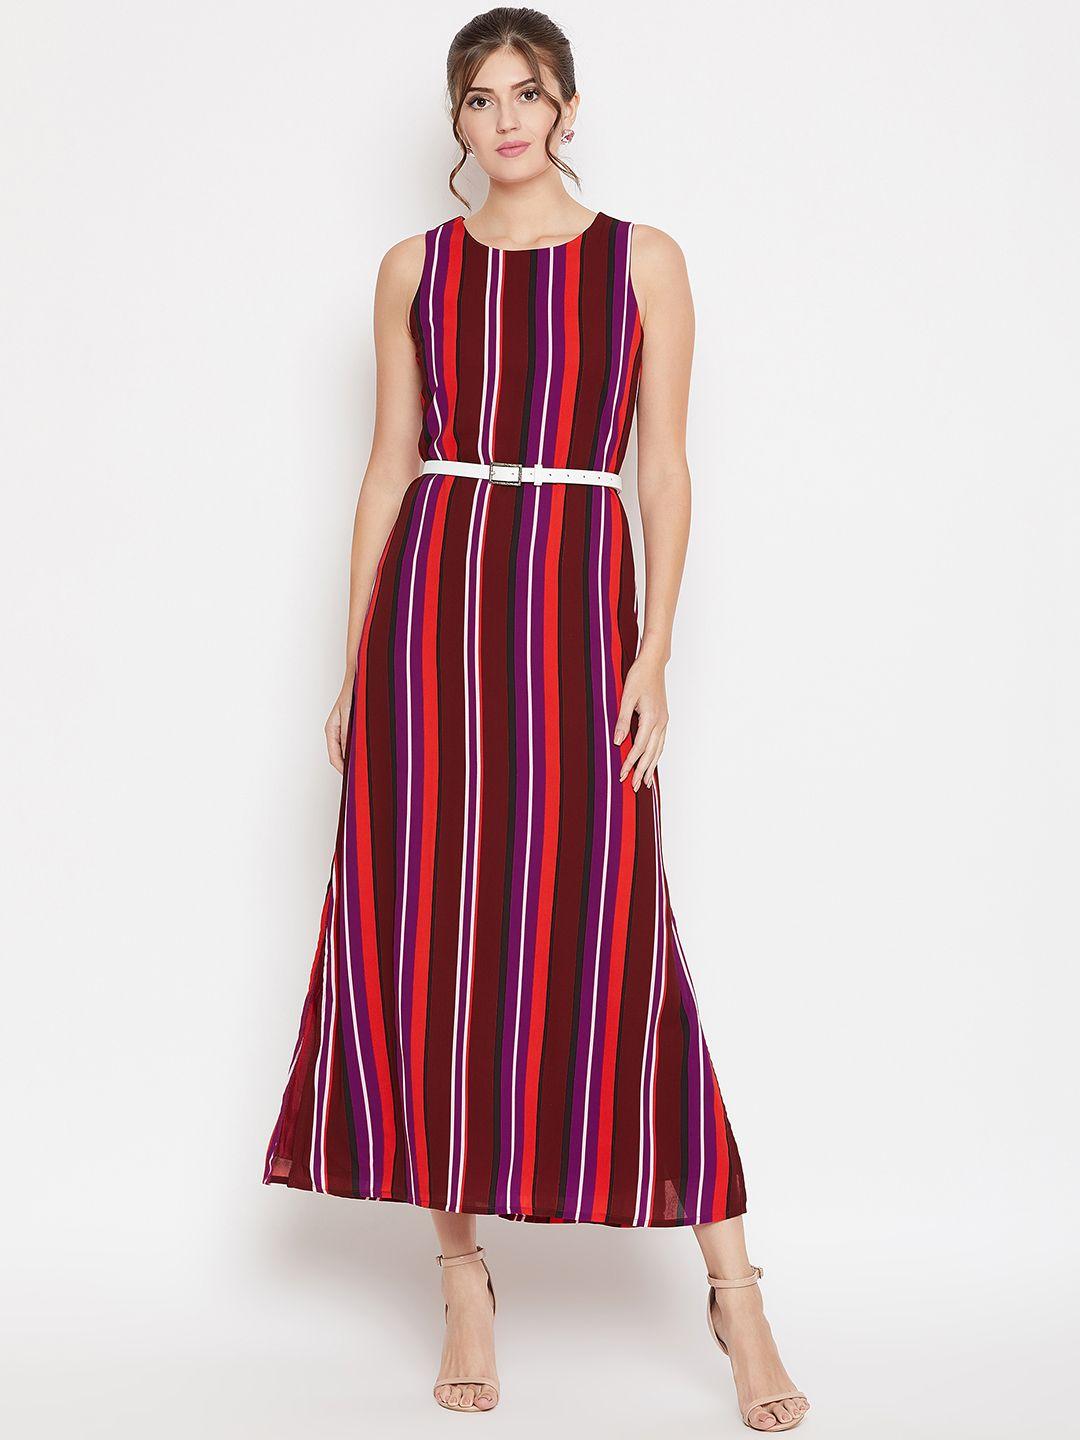 purys women maroon striped maxi dress